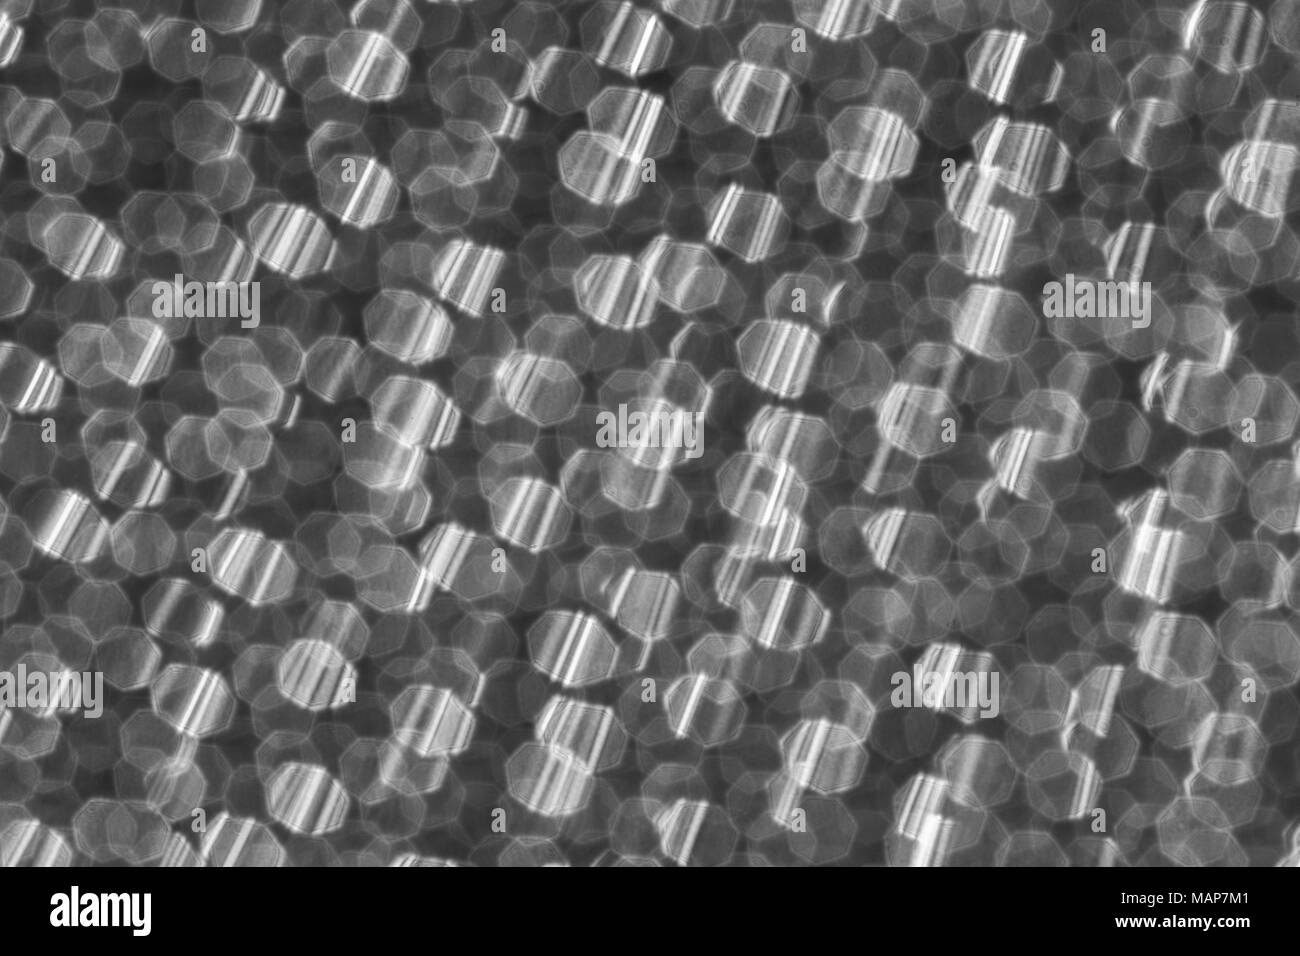 Soft-focus abstract in bianco e nero di micro-foto di perforazioni nel foglio metallico di un Braun rasoio elettrico. Metafora possibili connessioni astratta. Foto Stock